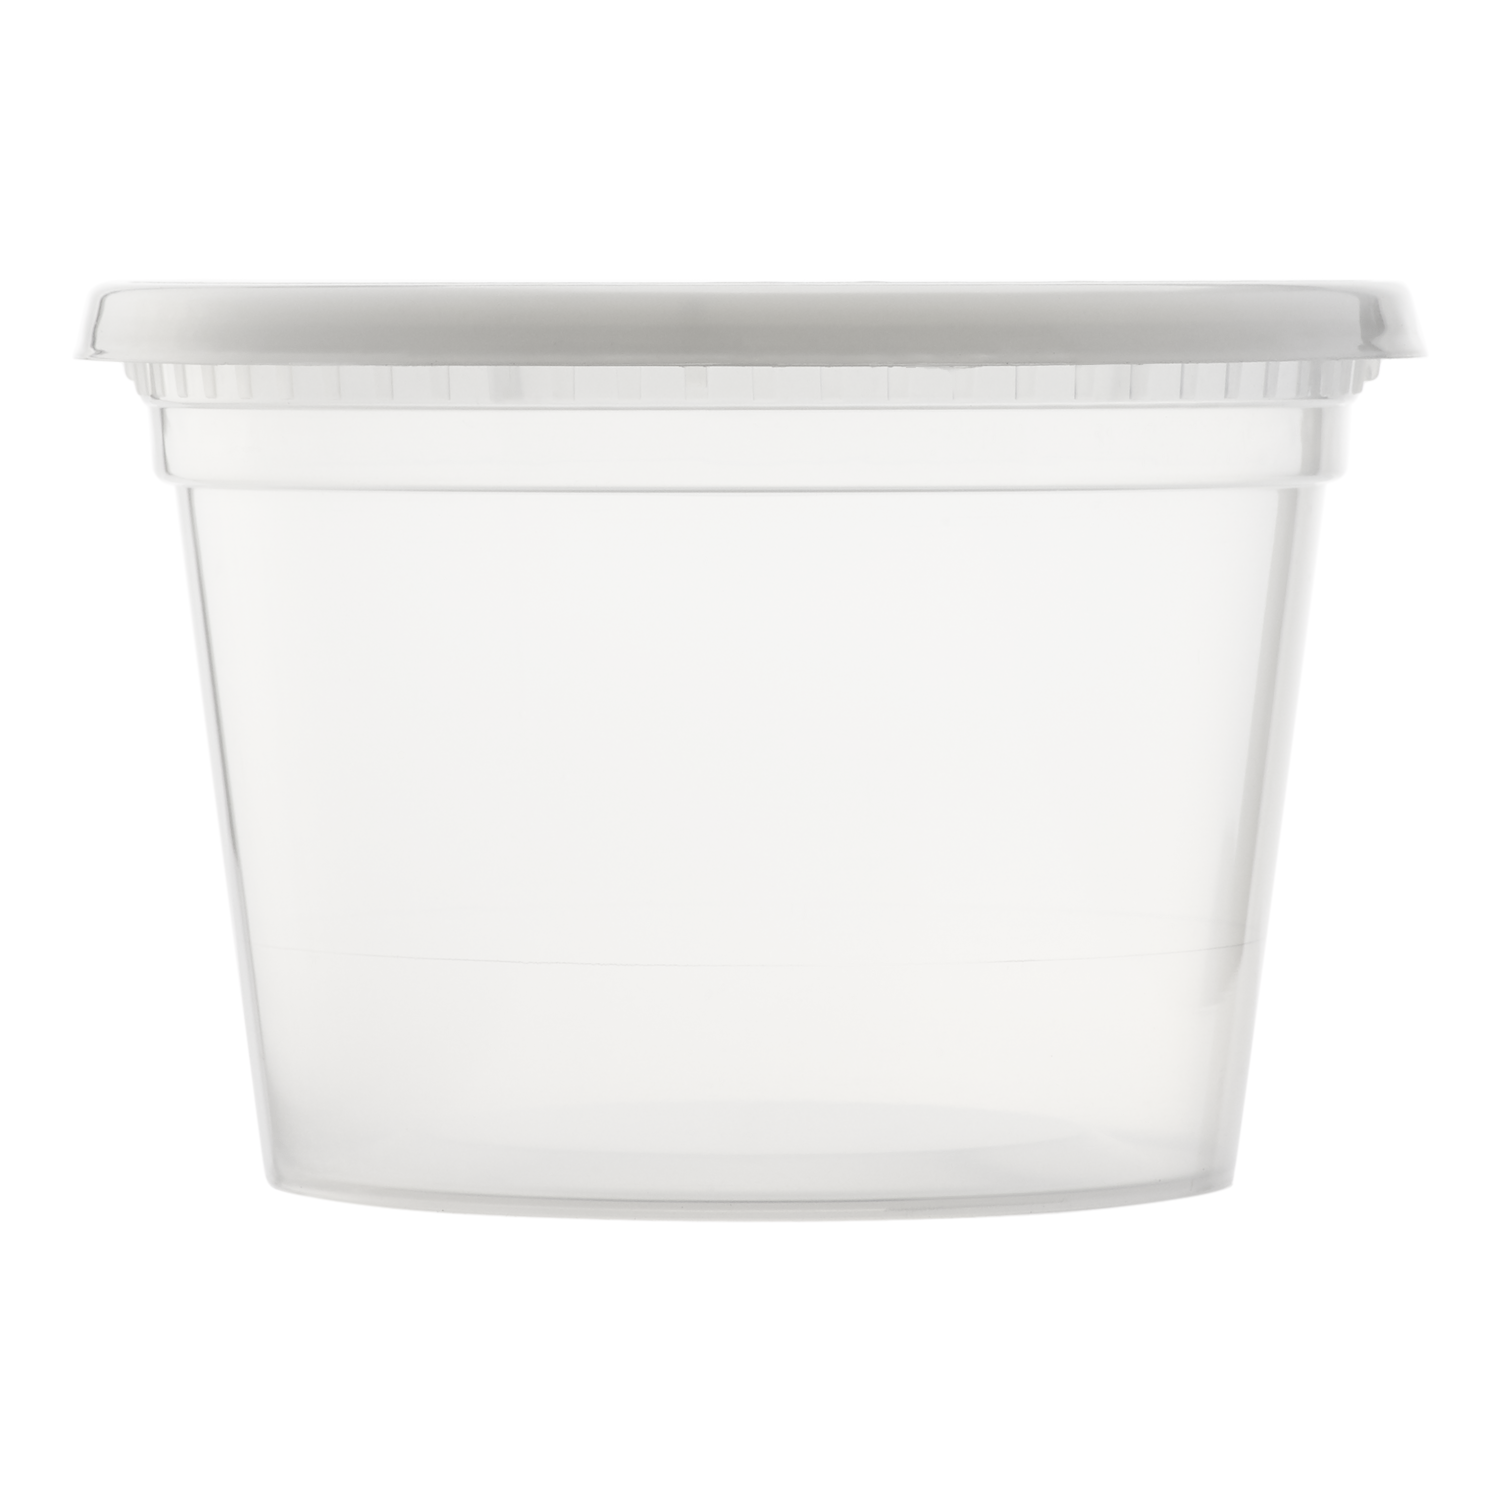 Restaurantware RWP0191W to Go Container, 16 oz, White